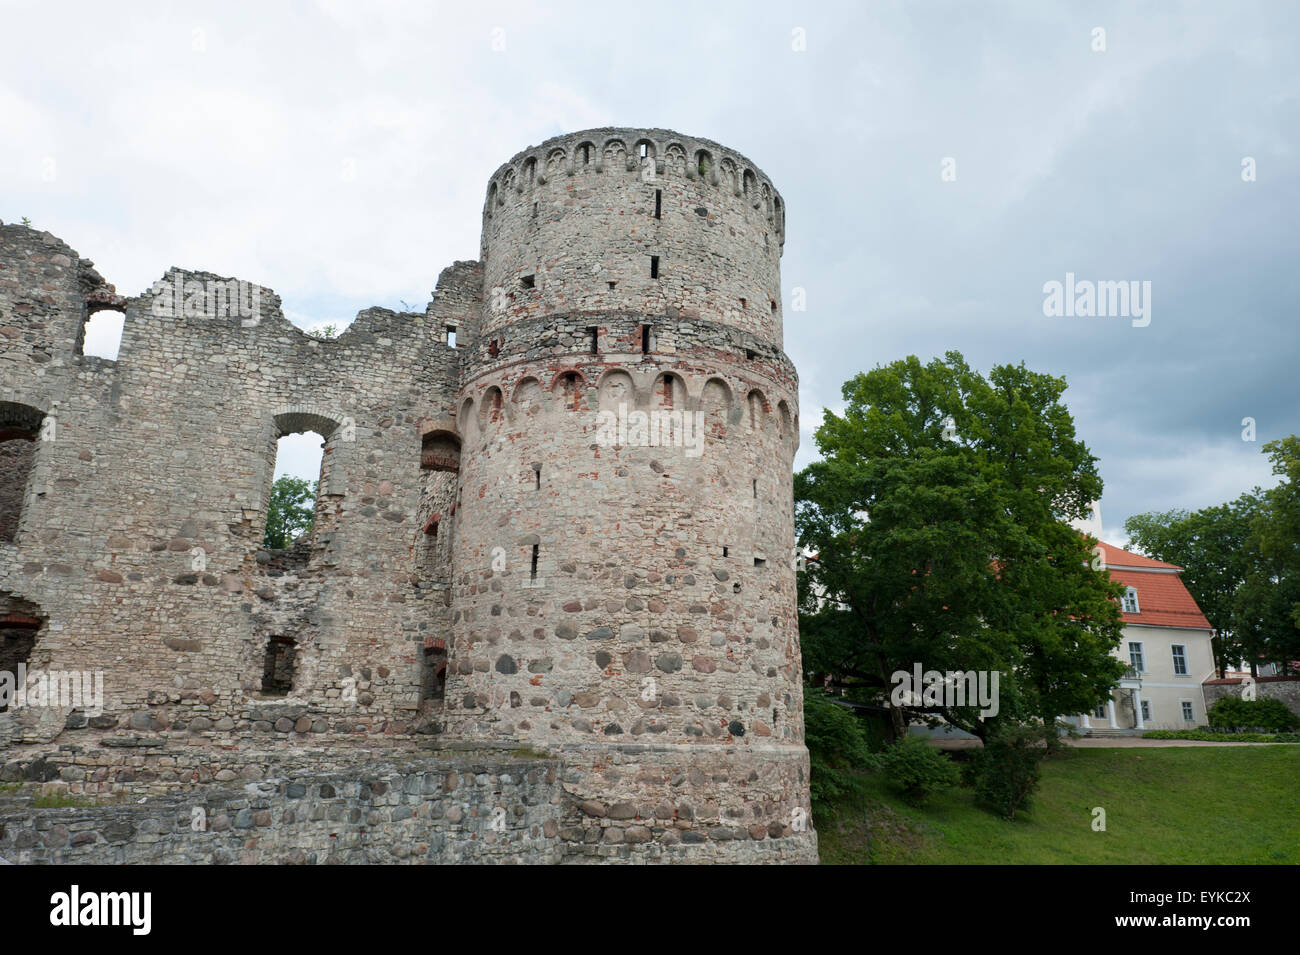 Cesis château médiéval datant du xiiie siècle et a été maintes fois reconstruite et élargie. Banque D'Images